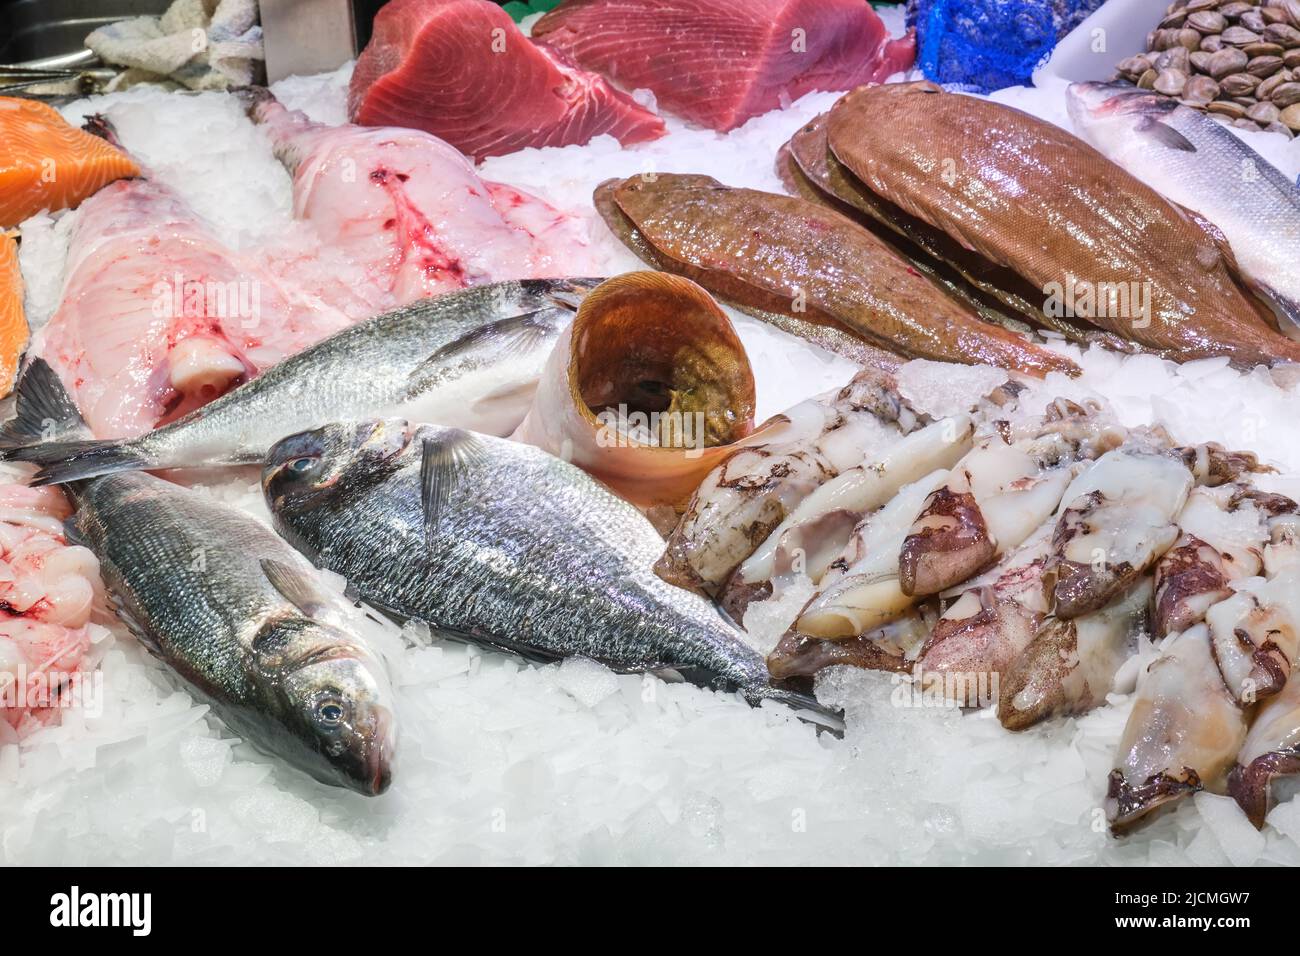 Mercado de pescado y marisco visto en Barcelona Foto de stock